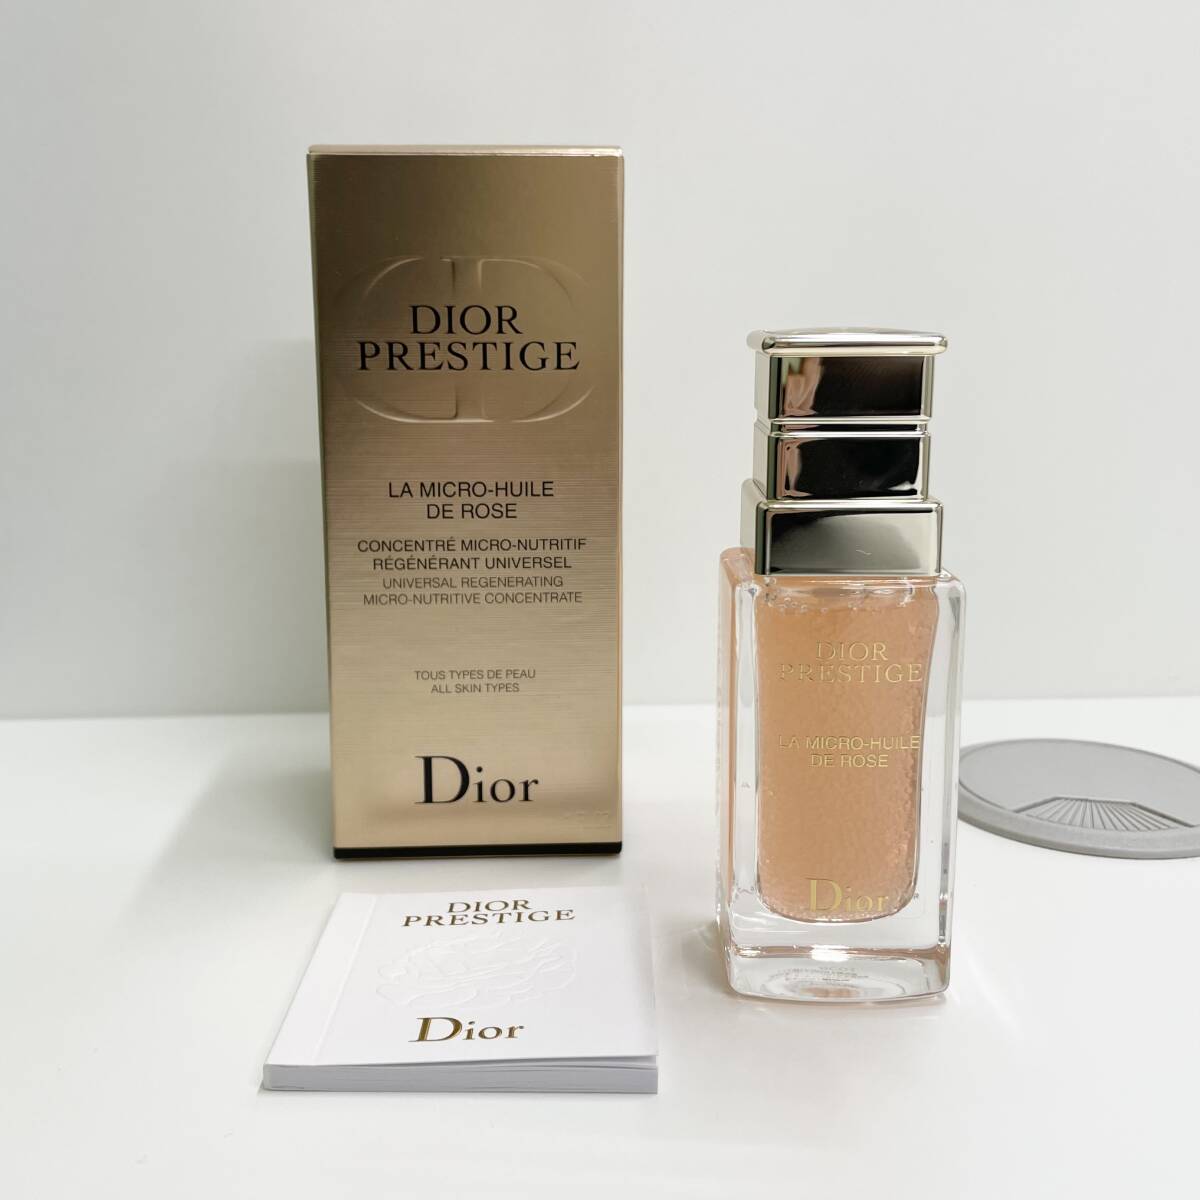 ★Christian Dior クリスチャン ディオール プレステージ ユイル ド ローズ 美容液 30ml 管5205_画像1